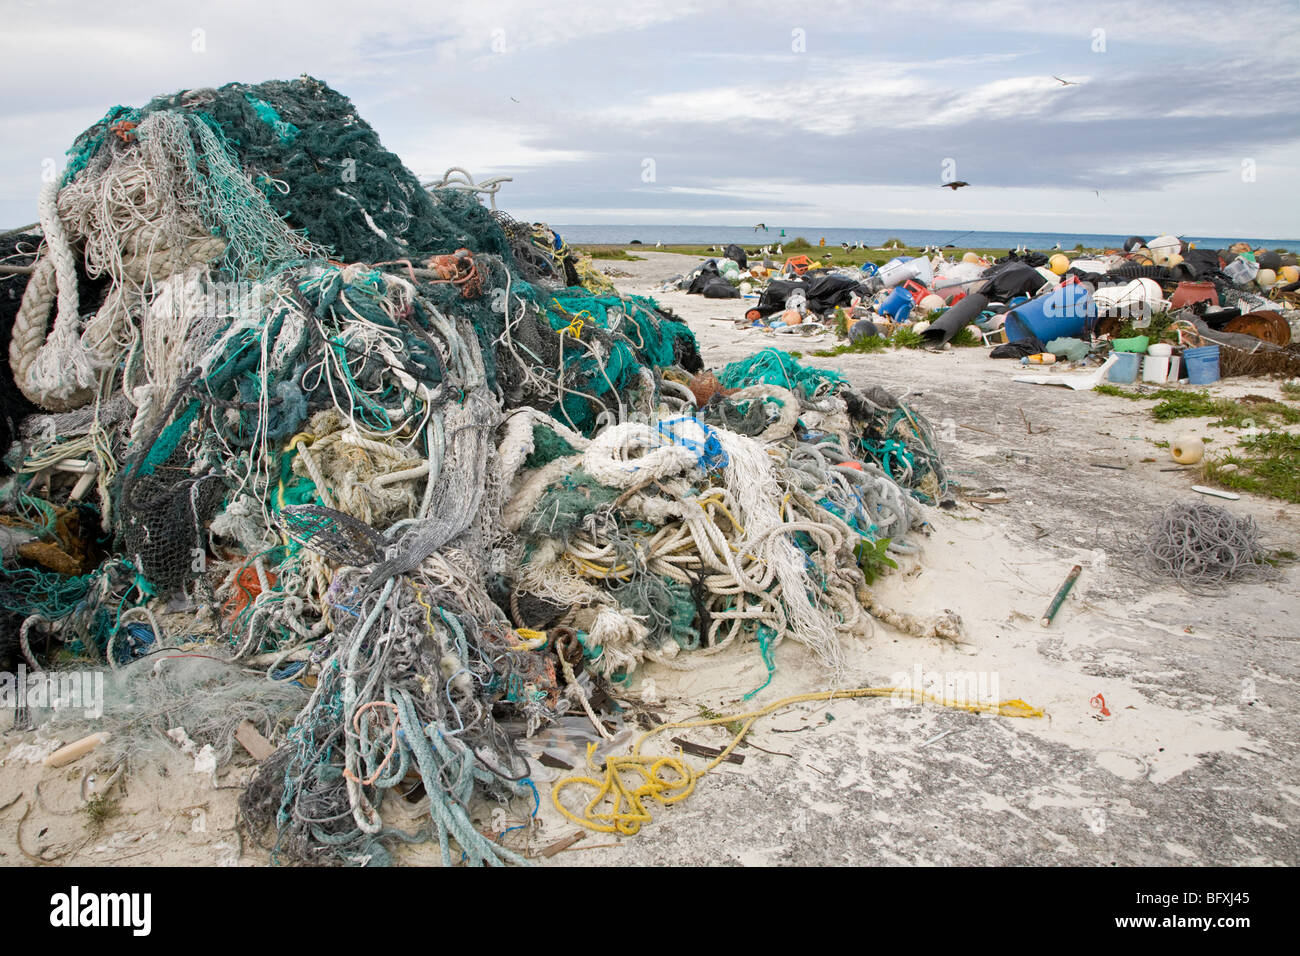 Les filets de pêche abandonnés, cordes et autres débris marins échoués par les courants marins, recueillies pour être expédiés hors des îles pour le recyclage ou l'élimination Banque D'Images